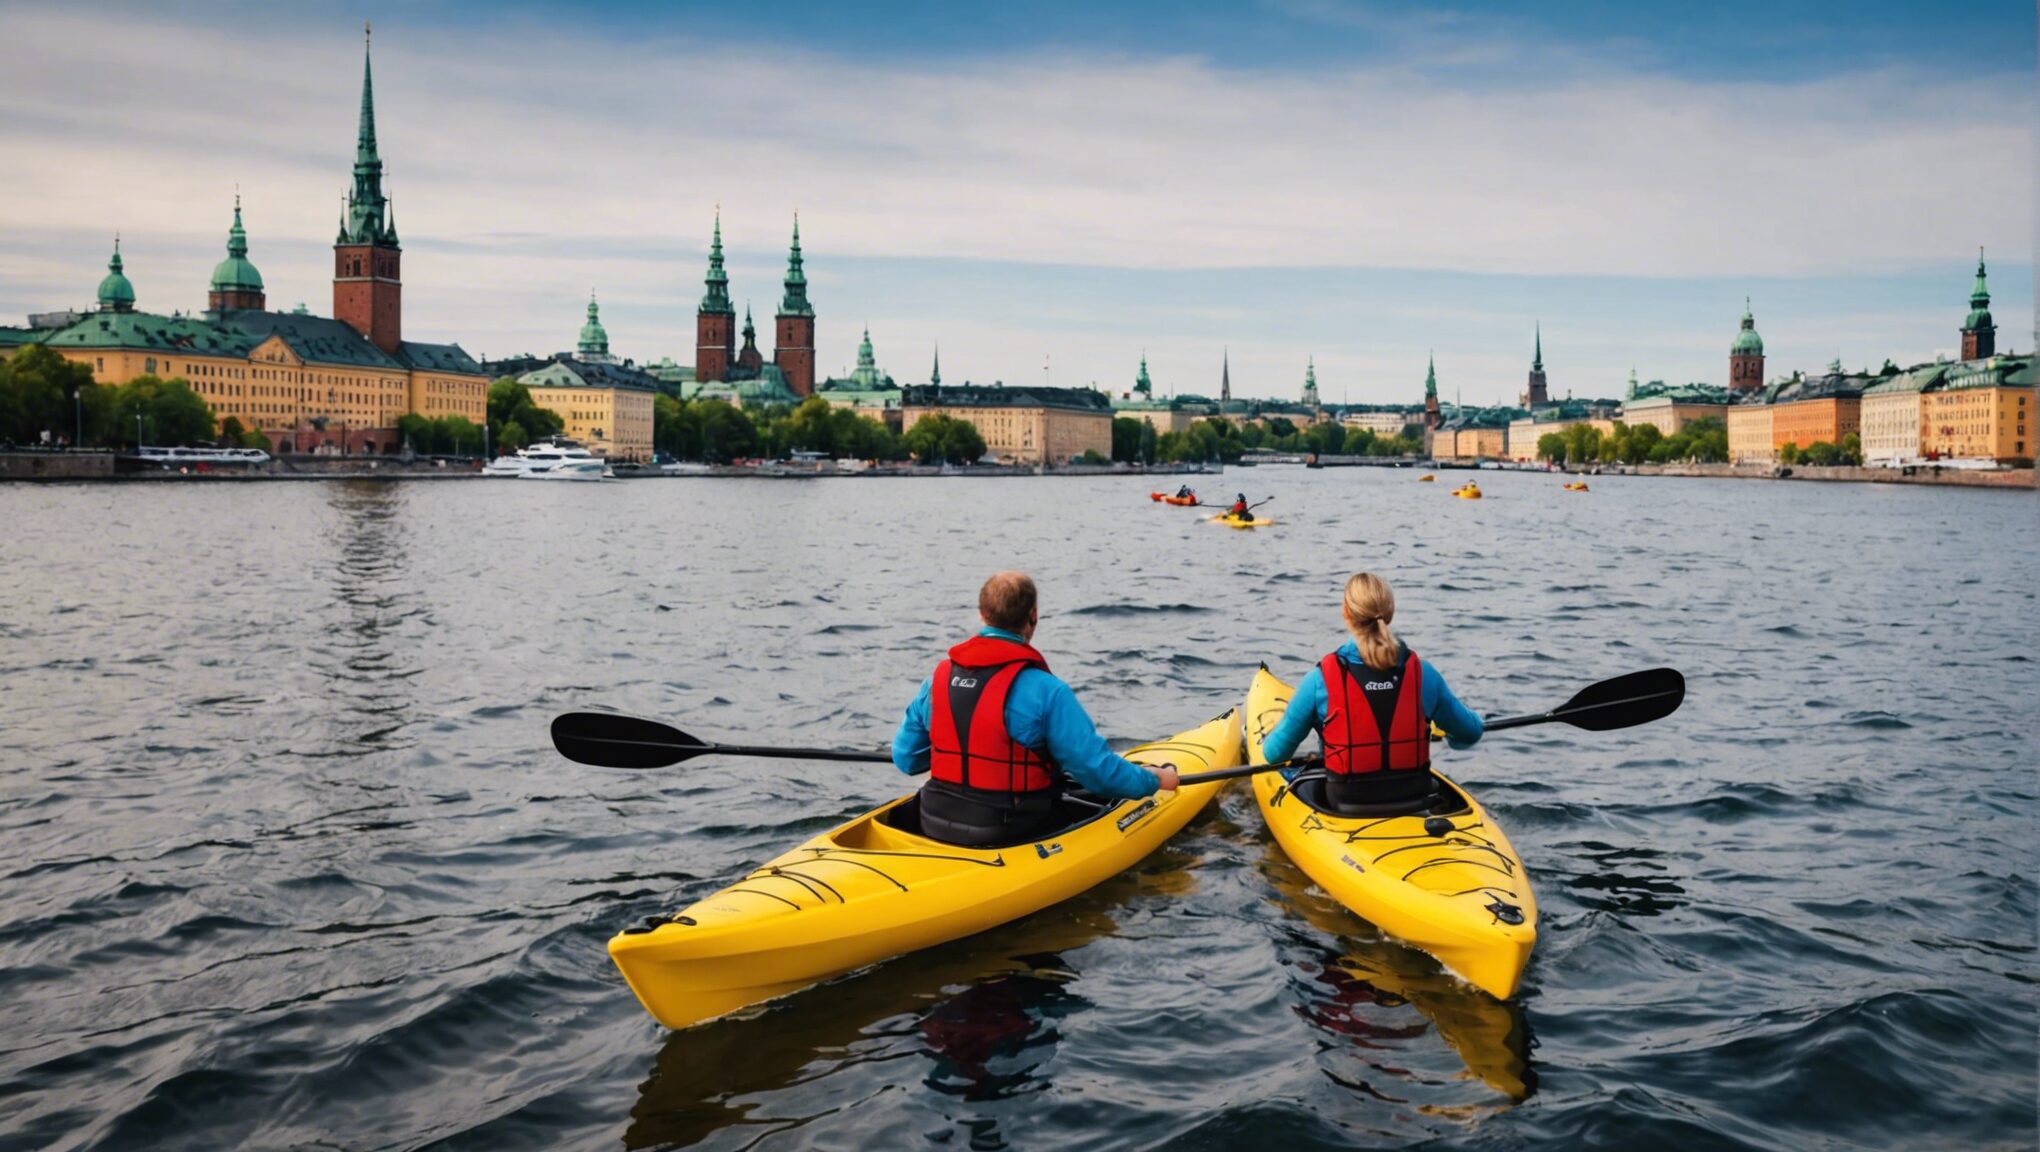 découvrez comment vivre des émotions fortes à stockholm en faisant du kayak en plein centre-ville ! profitez d'une expérience unique et revivez l'aventure au cœur de la capitale suédoise.